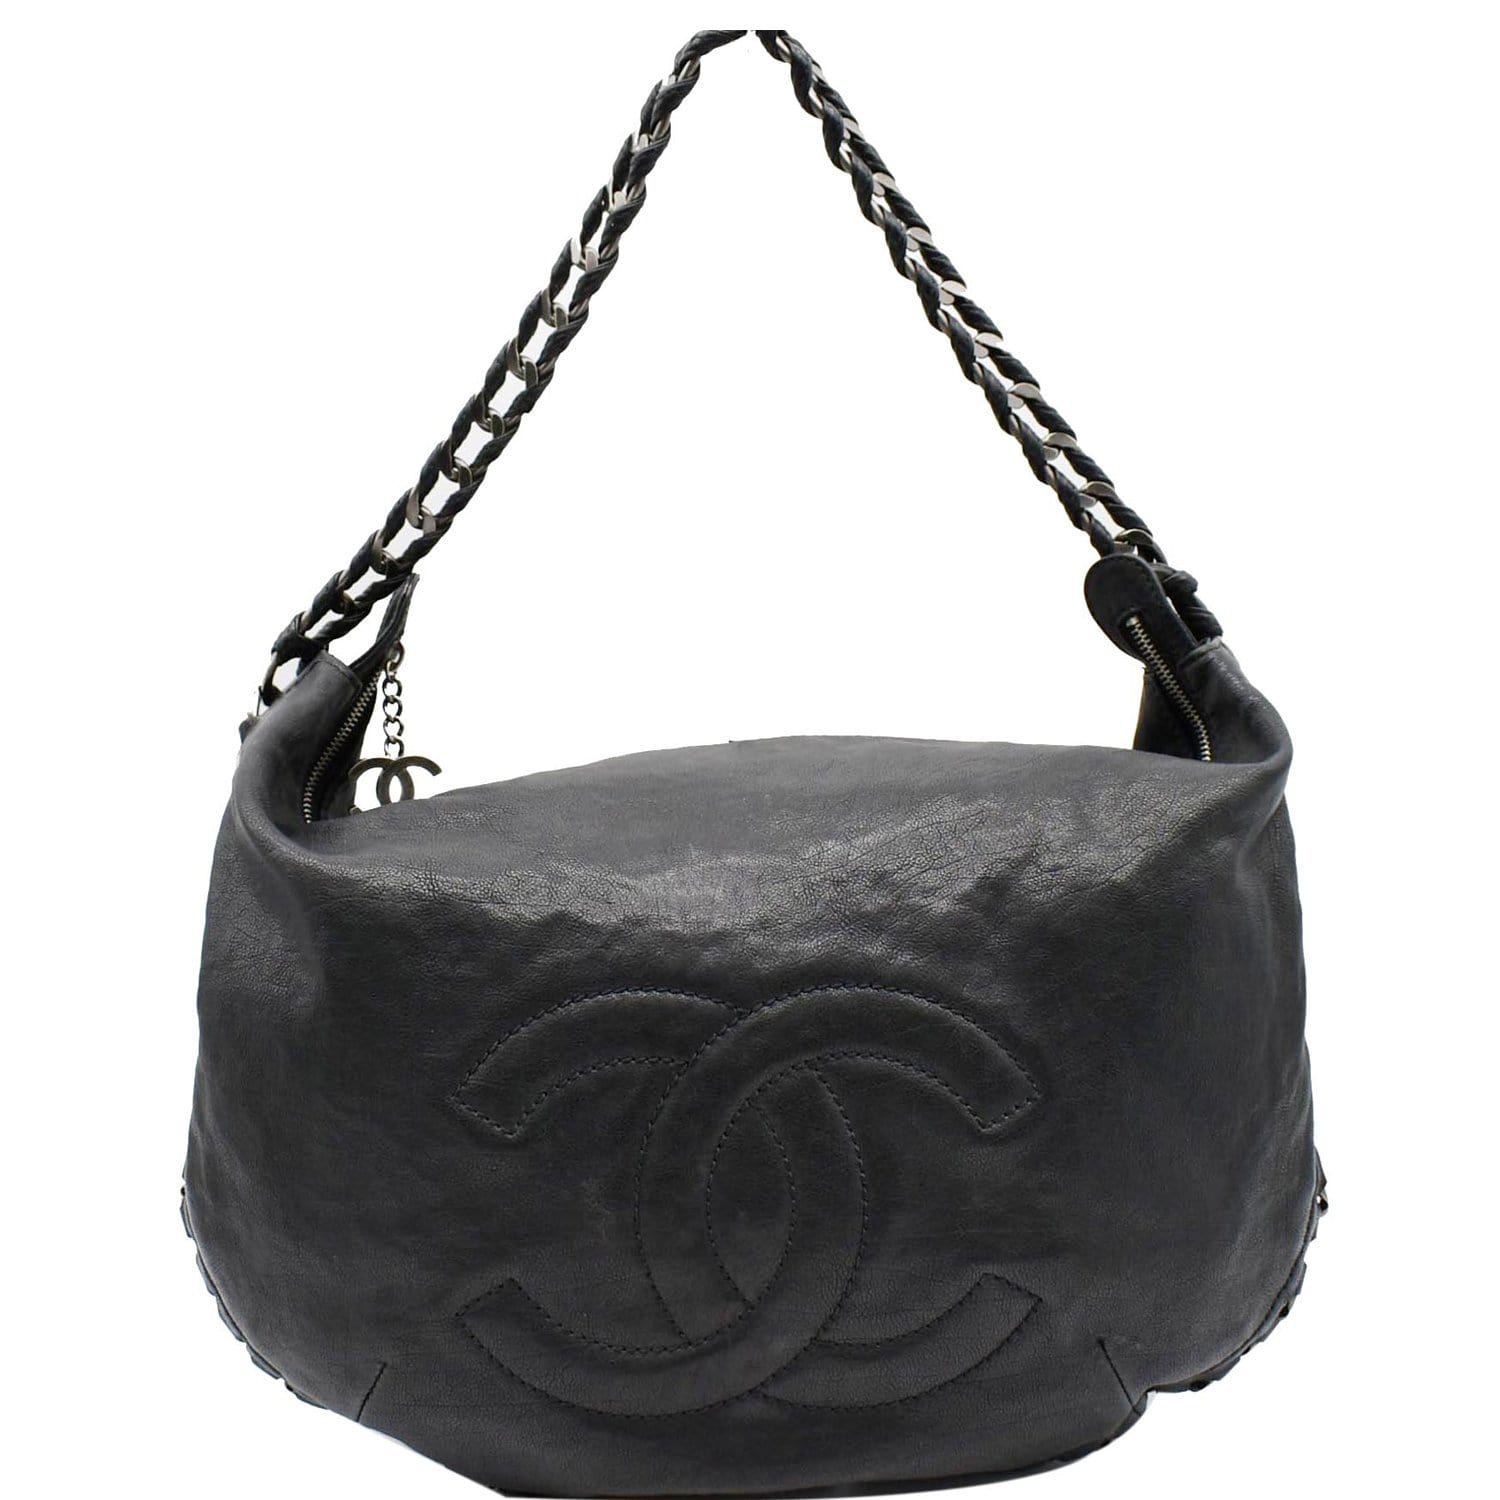 Chanel CC Hobo Bag